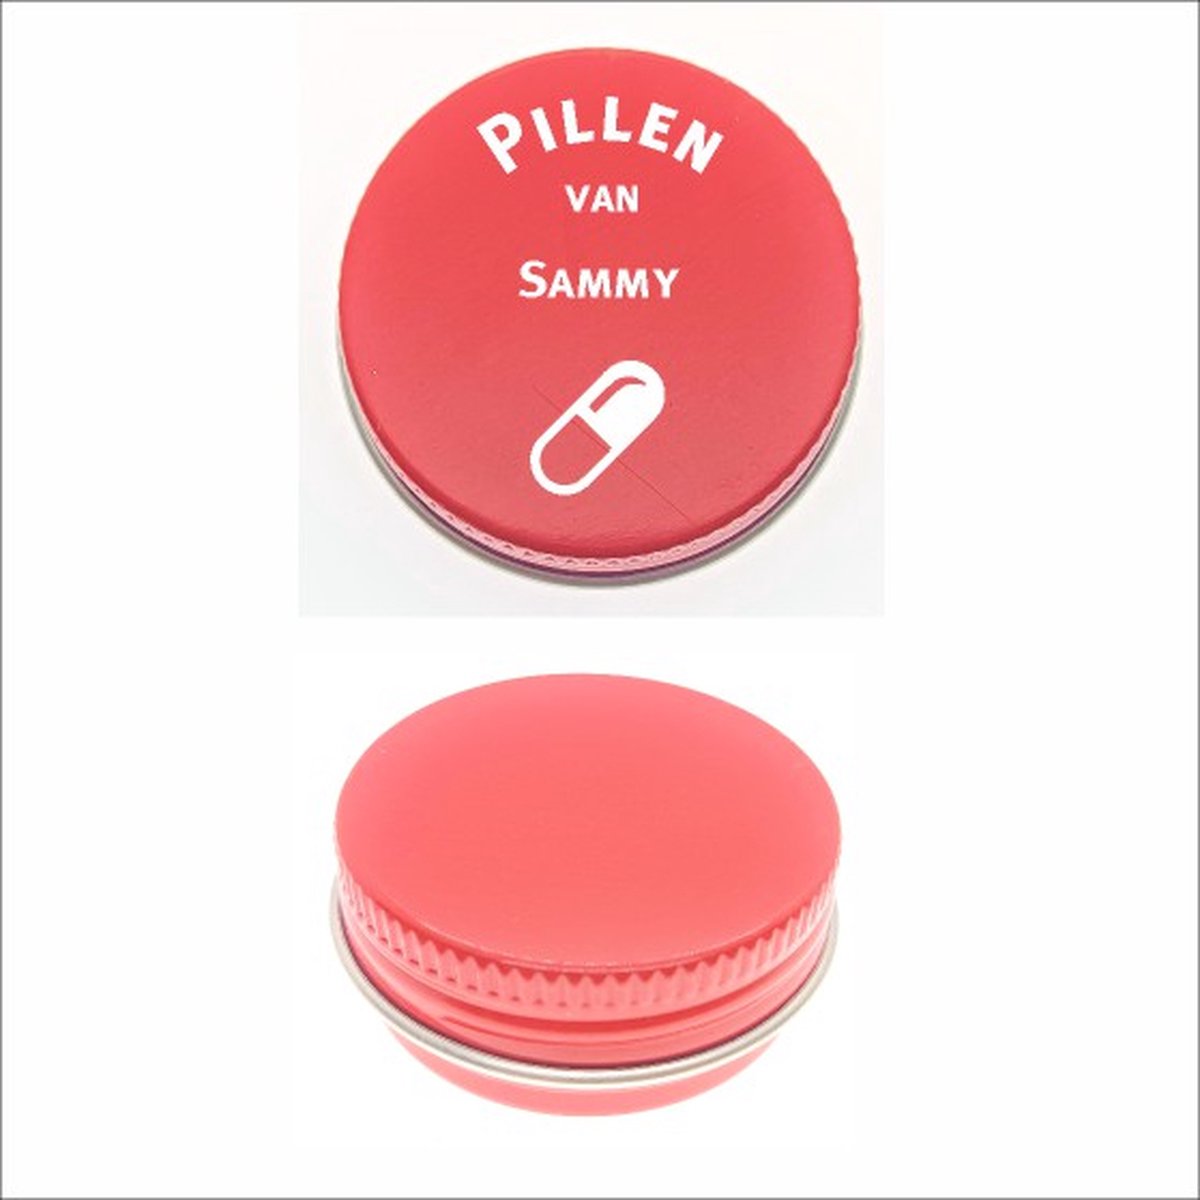 Pillen Blikje Met Naam Gravering - Sammy